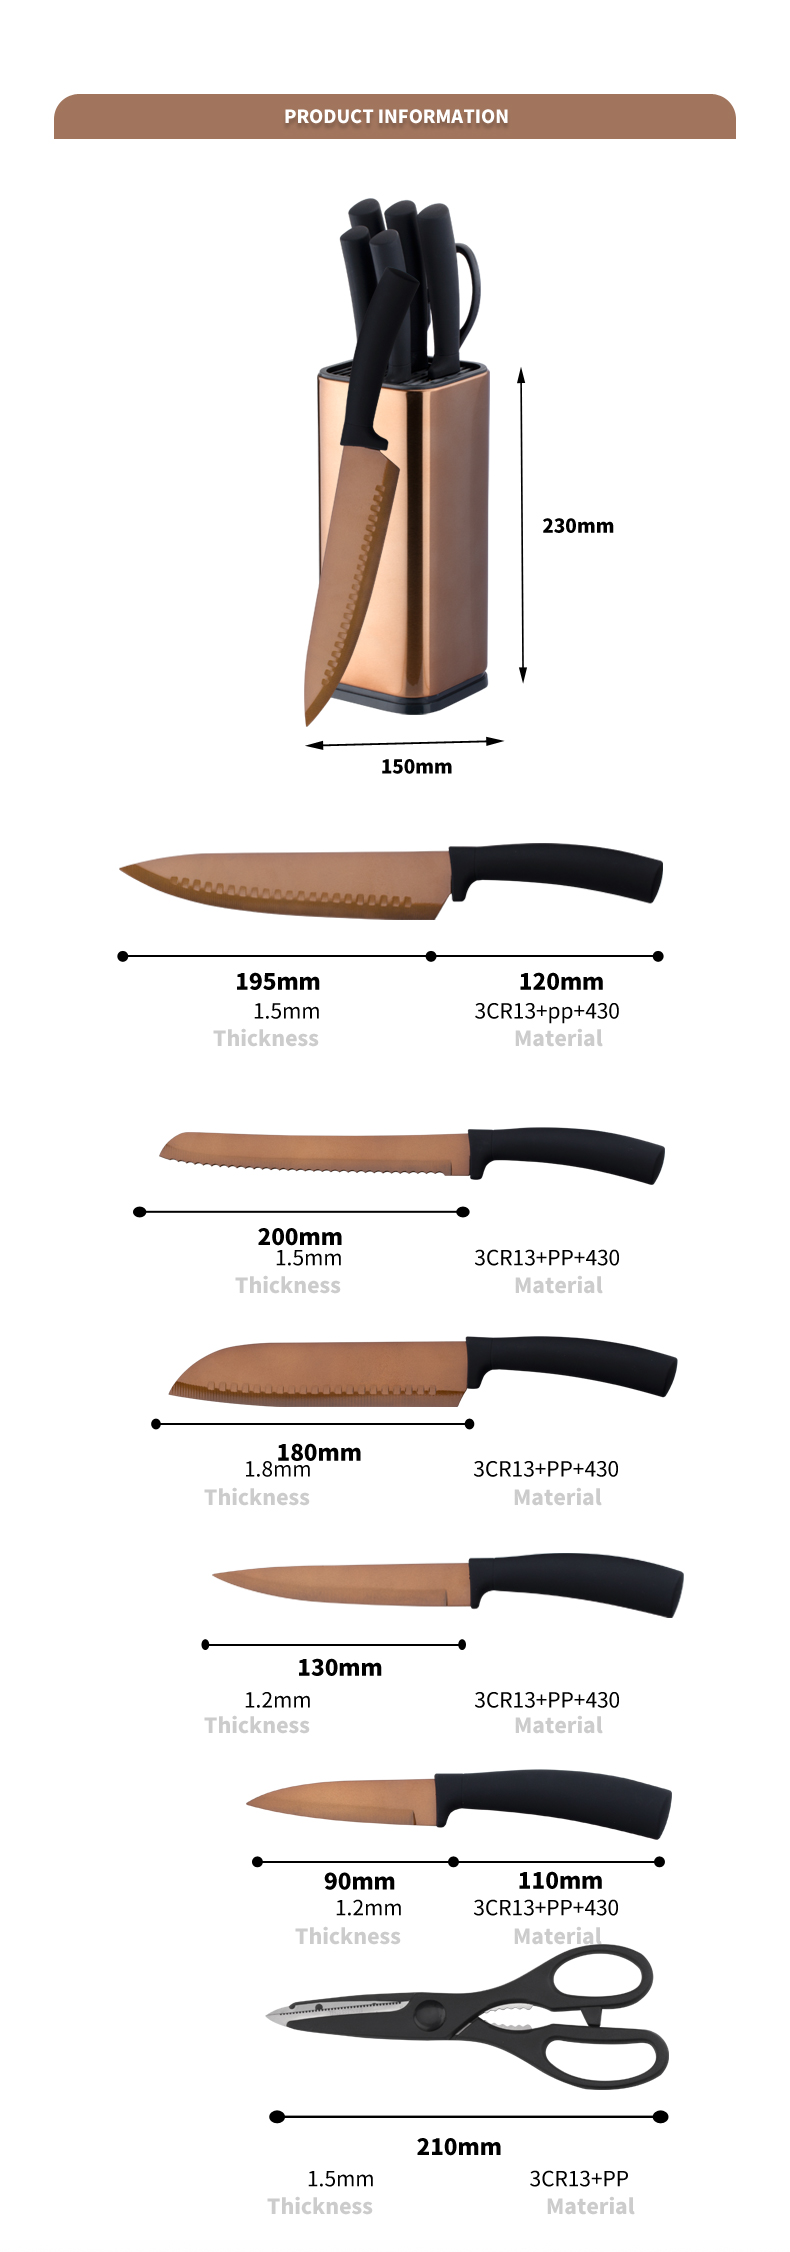 S143-Хорошее качество титанового покрытия из нержавеющей стали 5шт. Набор кухонных ножей с кухонными ножницами-ZX | кухонный нож, кухонные инструменты, силиконовая форма для торта, разделочная доска, наборы инструментов для выпечки, нож шеф-повара, нож для стейка, нож для нарезки, универсальный нож, нож для очистки овощей, блок ножей, подставка для ножей, нож Сантоку, нож для малышей, пластиковый нож, антипригарная окраска Нож, красочный нож, нож из нержавеющей стали, консервный нож, открывалка для бутылок, ситечко для чая, терка, взбиватель яиц, нейлоновый кухонный инструмент, силиконовый кухонный инструмент, резак для печенья, набор кухонных ножей, точилка для ножей, овощечистка, нож для торта, нож для сыра, пицца Нож, силиконовый шпатель, силиконовая ложка, щипцы для еды, кованый нож, кухонные ножницы, ножи для выпечки торта, детские кухонные ножи, разделочный нож